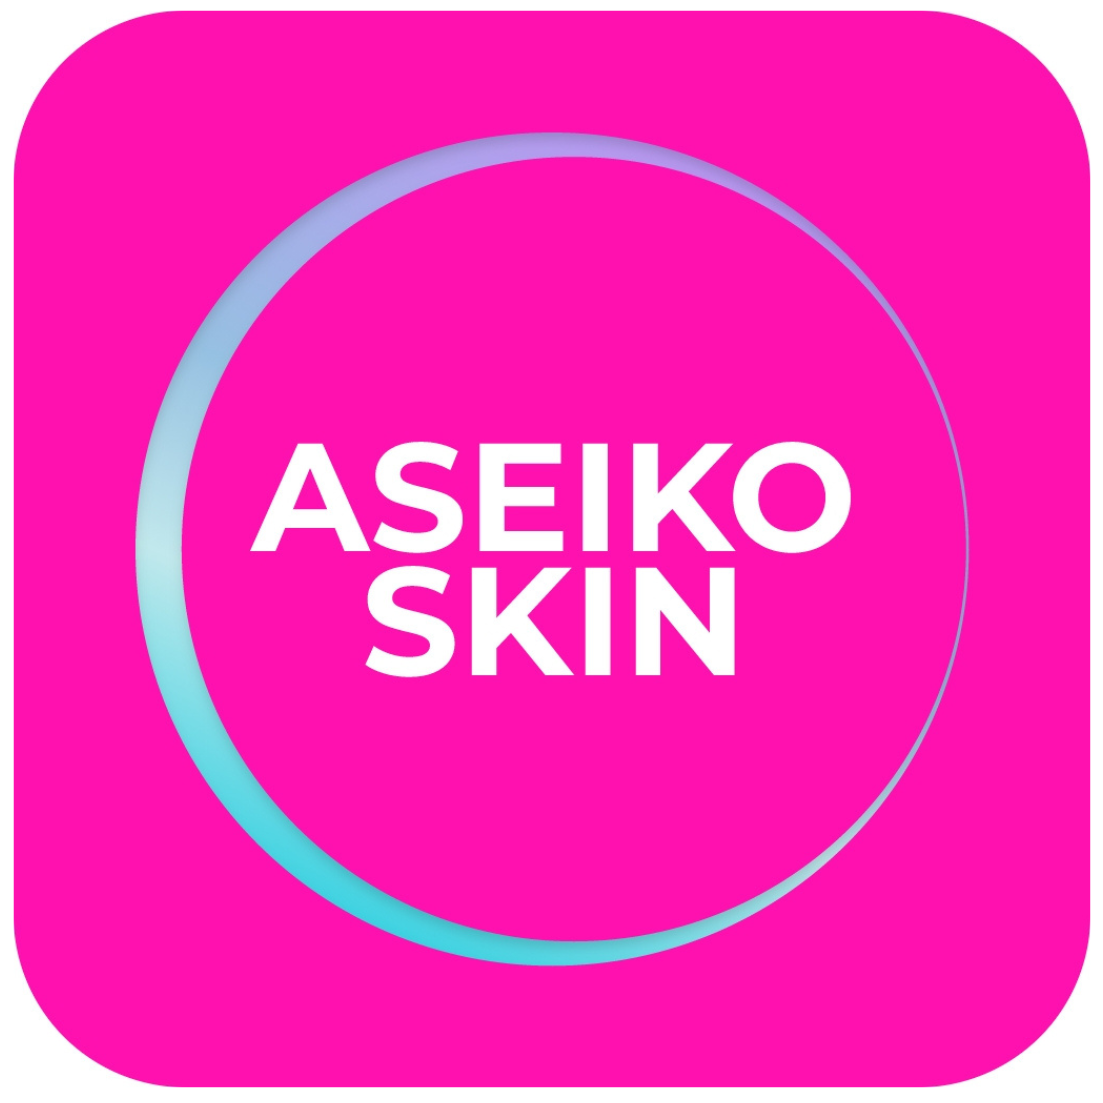 aseiko-skin-logo